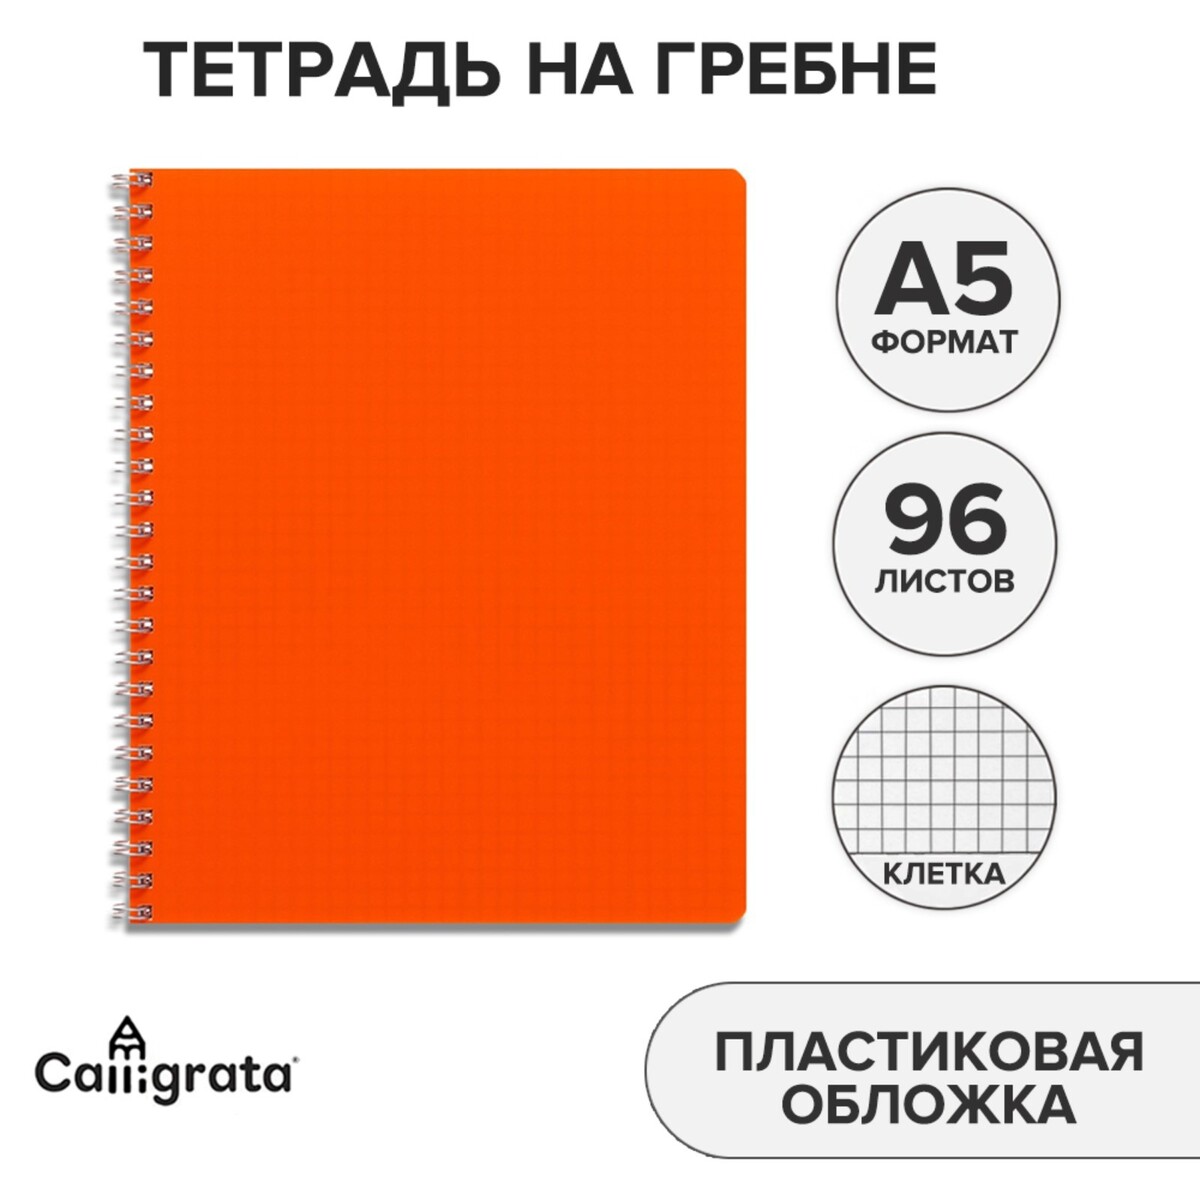 Тетрадь на гребне a5 96 листов в клетку calligrata оранжевая, пластиковая обложка, блок офсет